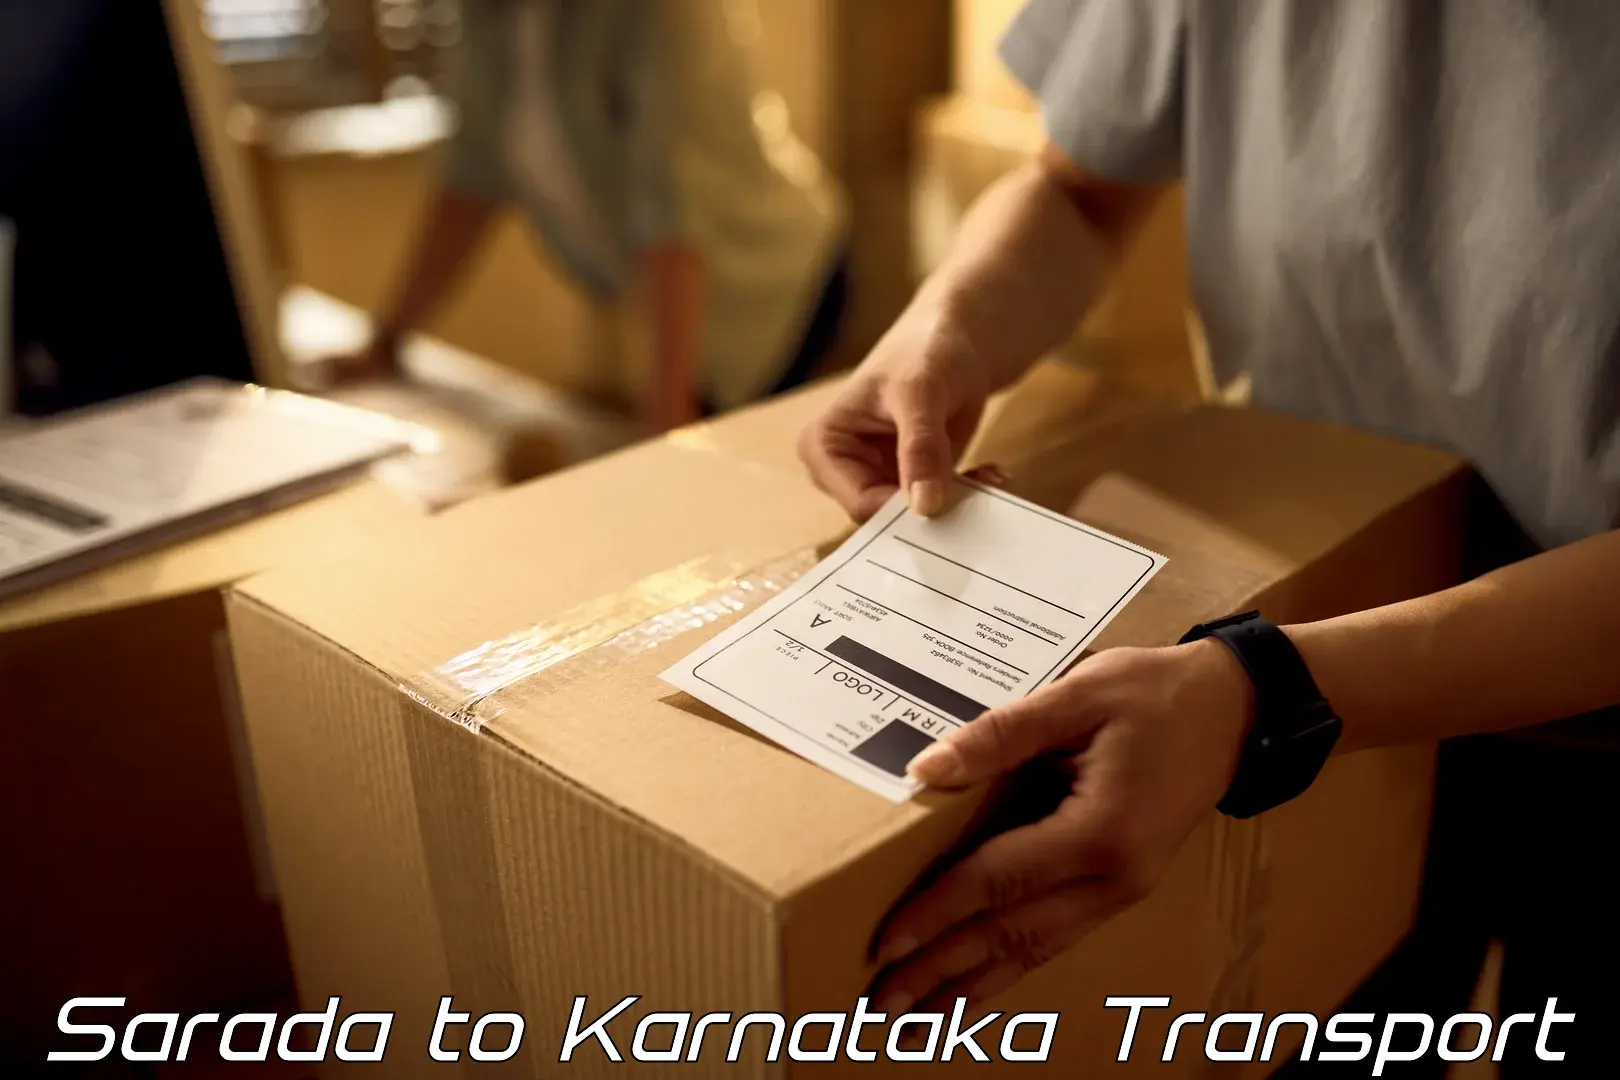 Container transport service Sarada to Heggadadevankote